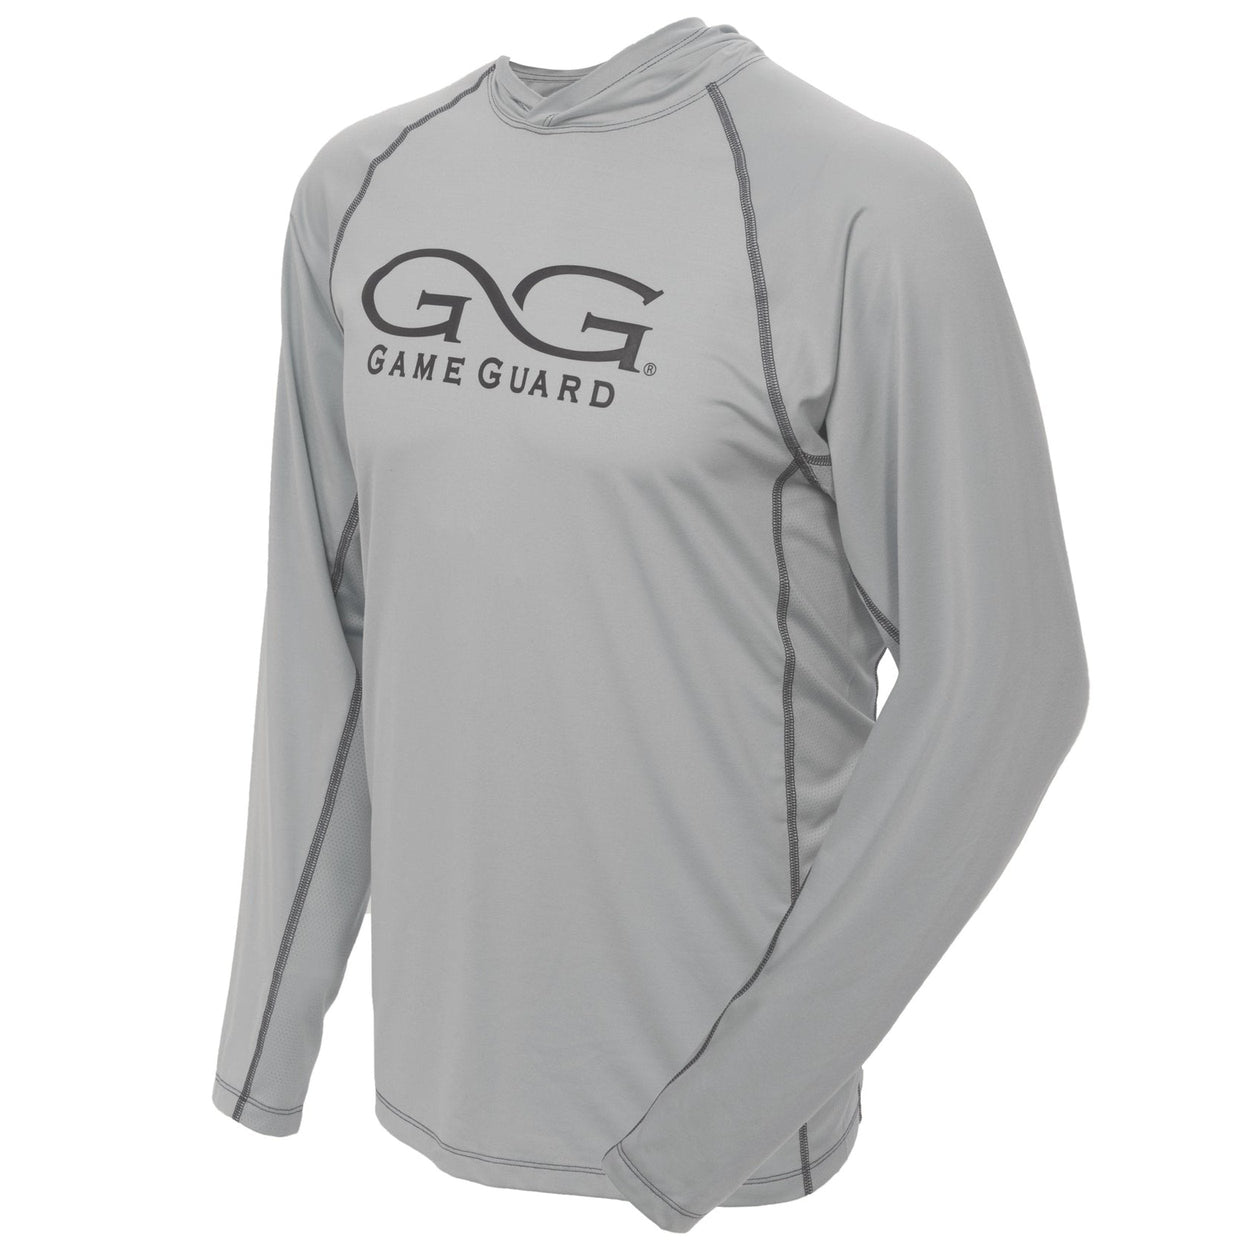 Maroon Game Guard Fishing Shirt Size XL #gameguard - Depop